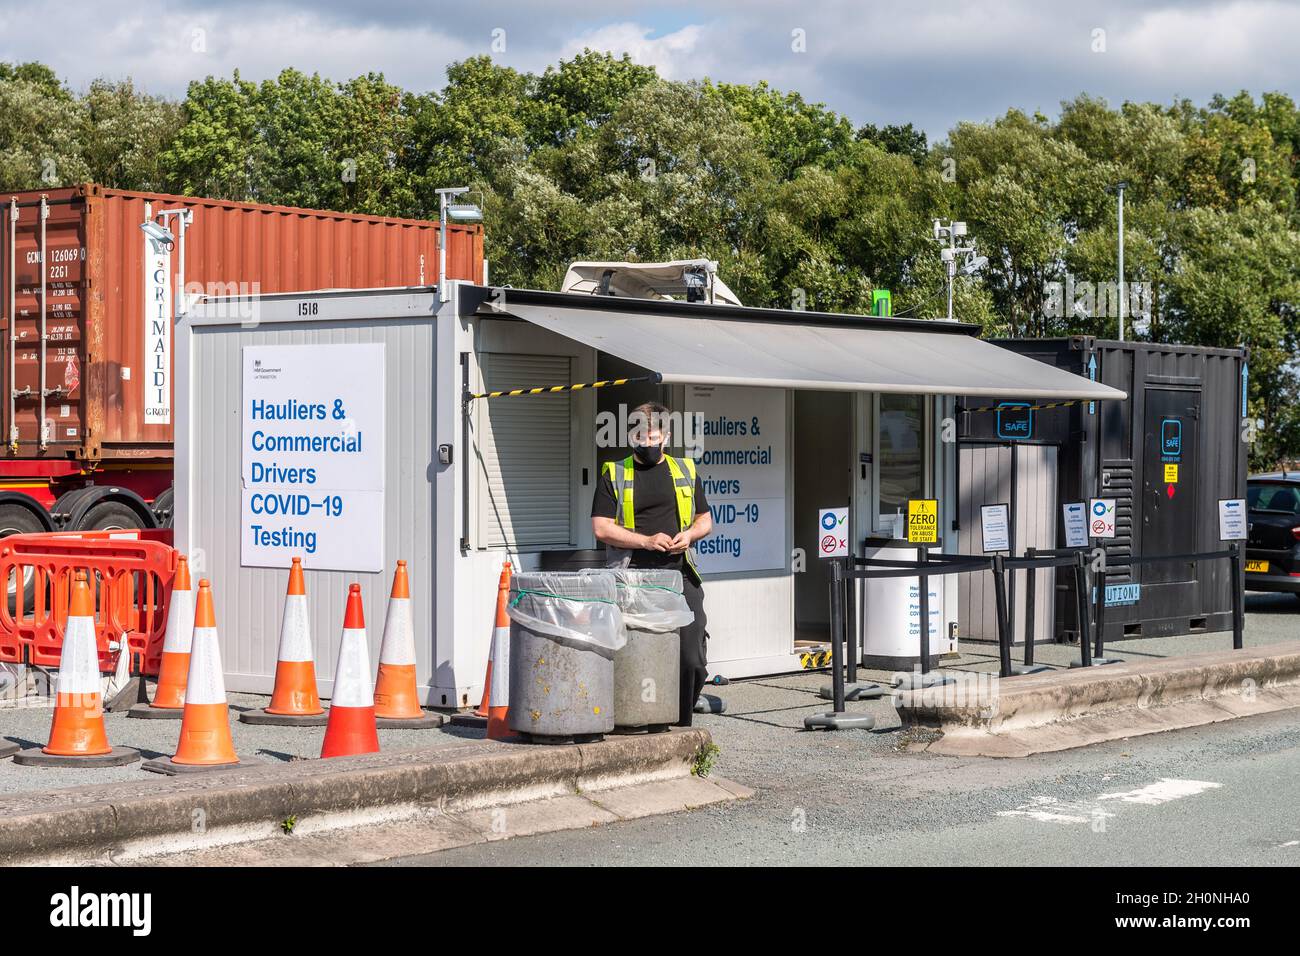 Centro di test COVID-19 per conducenti commerciali presso la stazione di servizio Burtonwood sull'autostrada M62 nel Regno Unito. Foto Stock